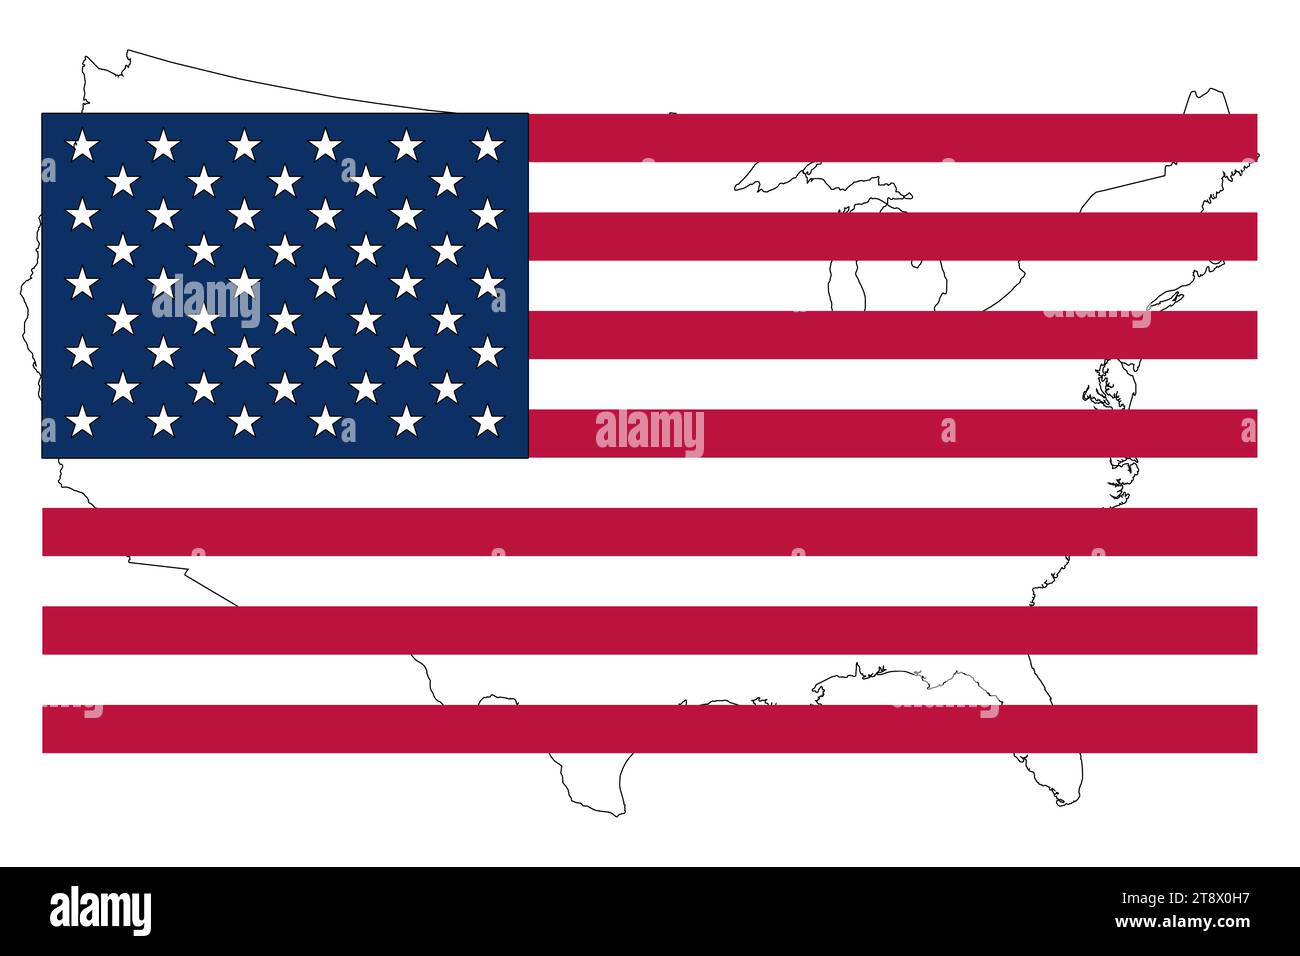 usa, Flagge mit amerika im Hintergrund, Symbol der Nation für die Geschichte und Erinnerung an dieses Volk. Politische Wahl, Logo-Flagge. Stockfoto